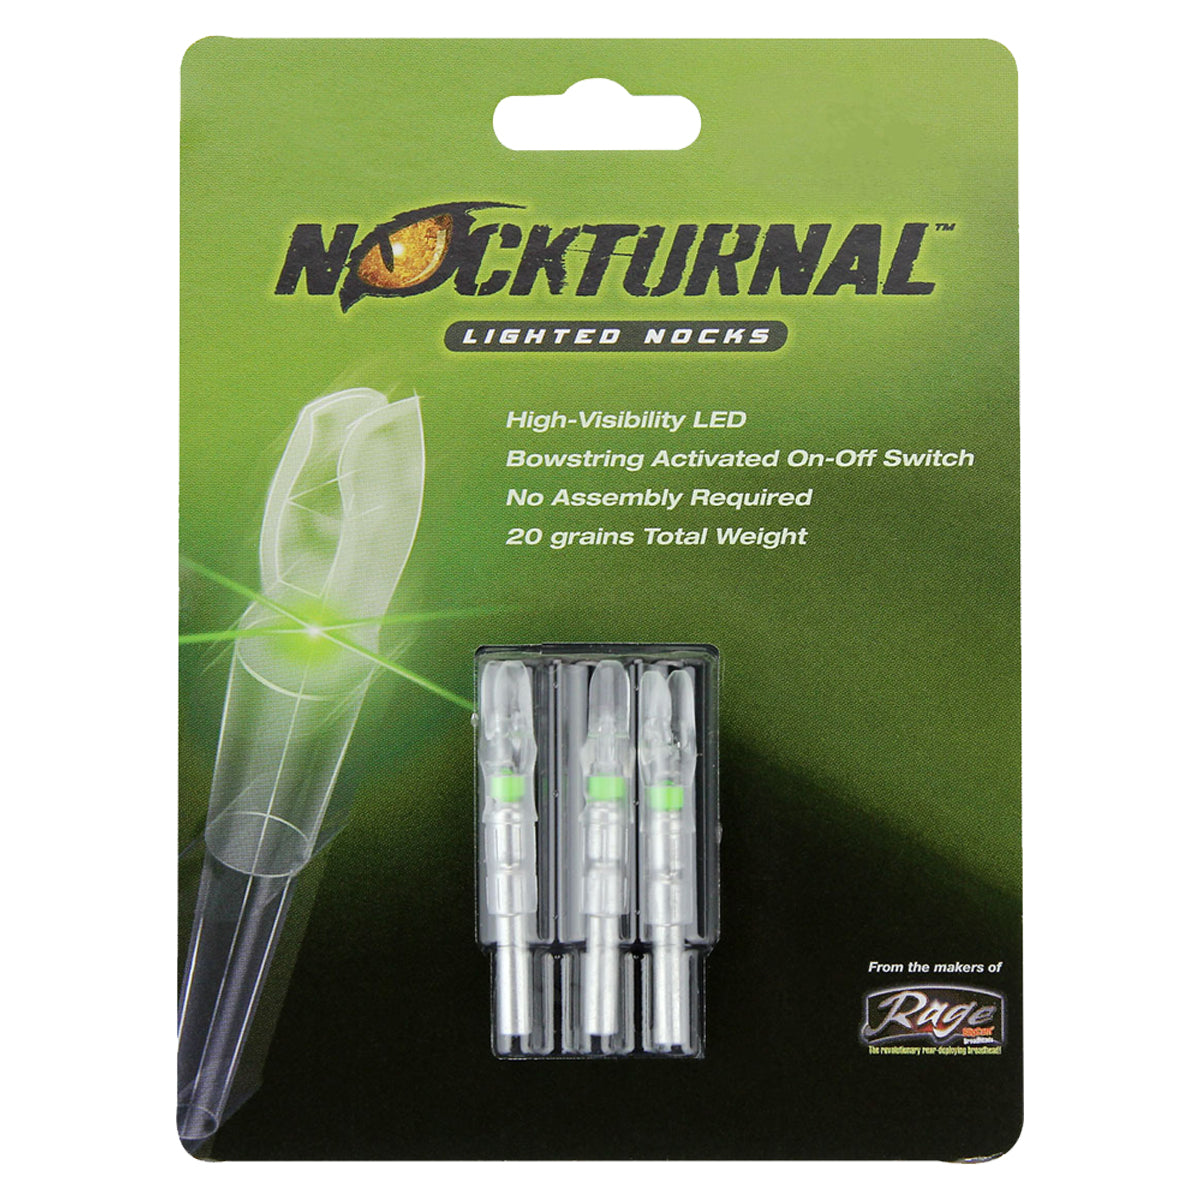 Nockturnal Lighted X-Nock in  by GOHUNT | Nockturnal - GOHUNT Shop